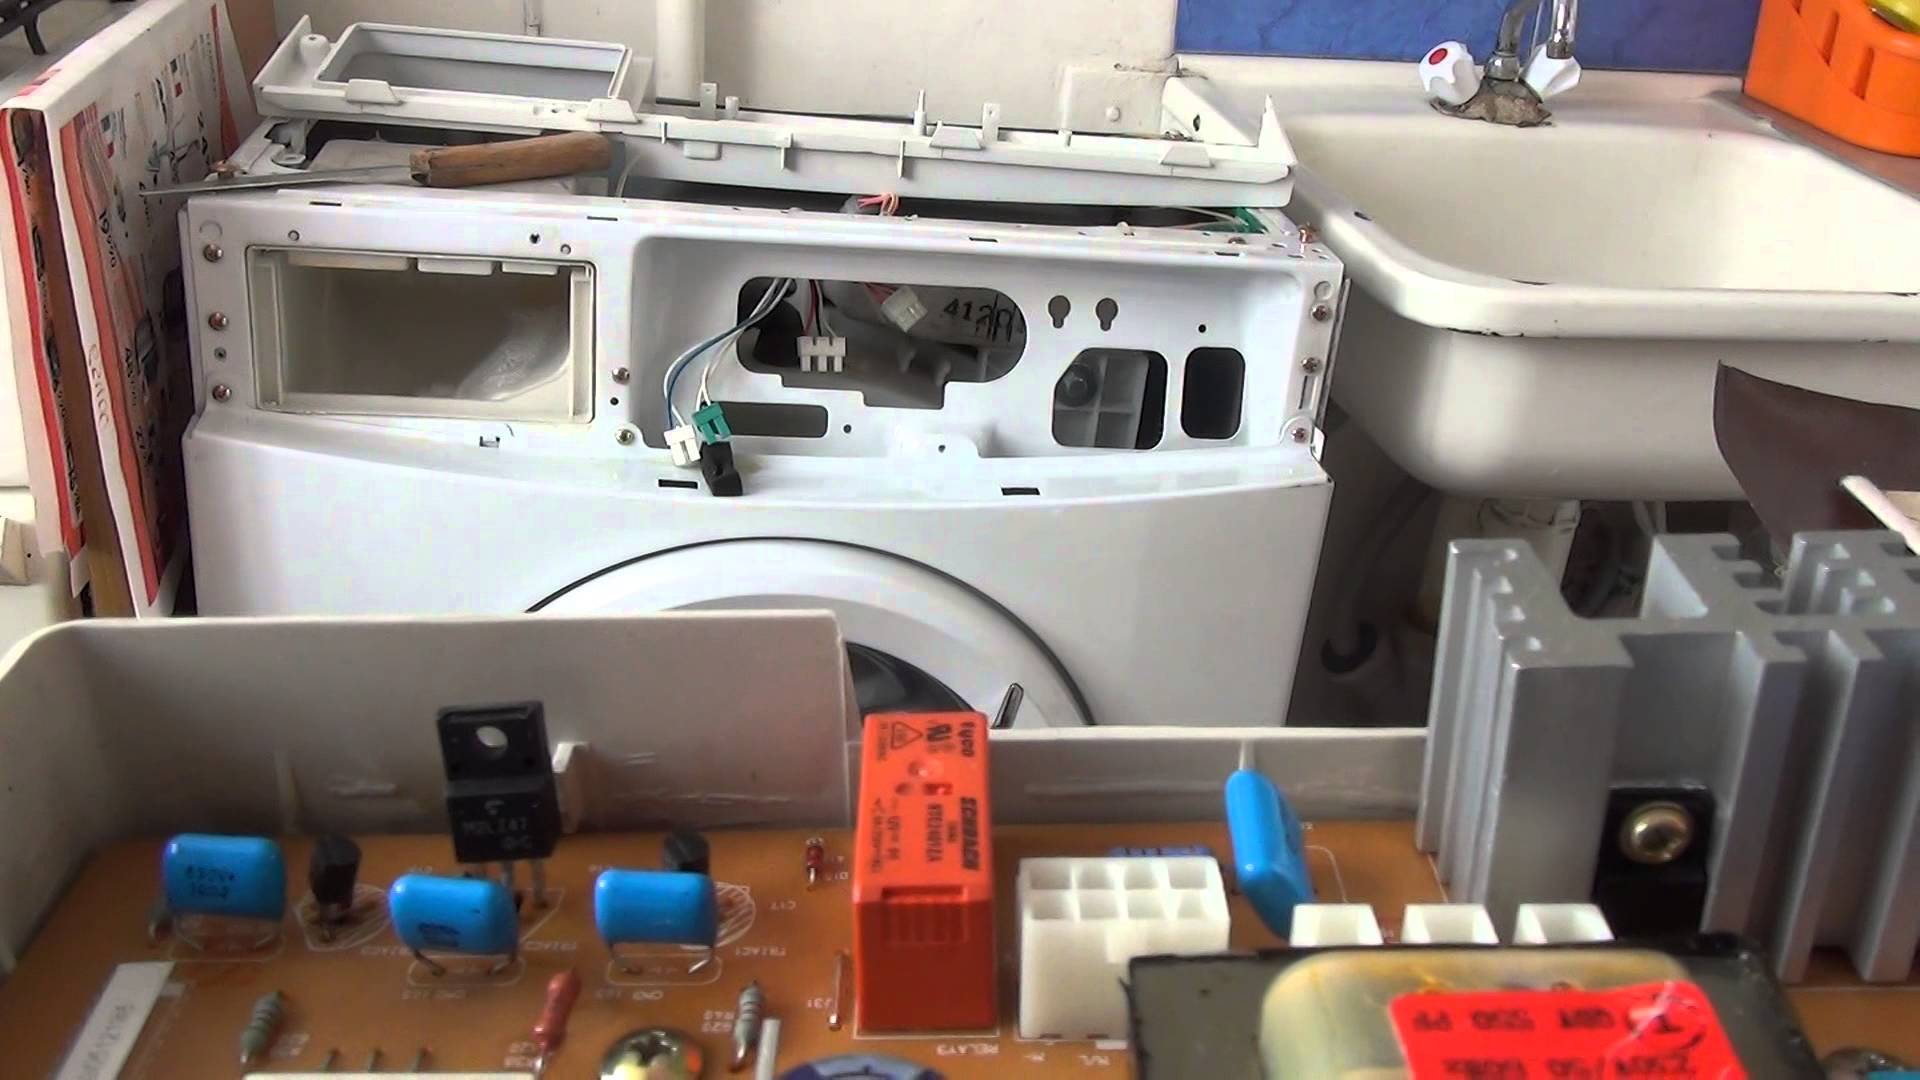 Ремонт стиральных машин своими руками: как устранить неисправности самостоятельно в таких марках, как lg, самсунг, аристон, ардо и других, по инструкции?